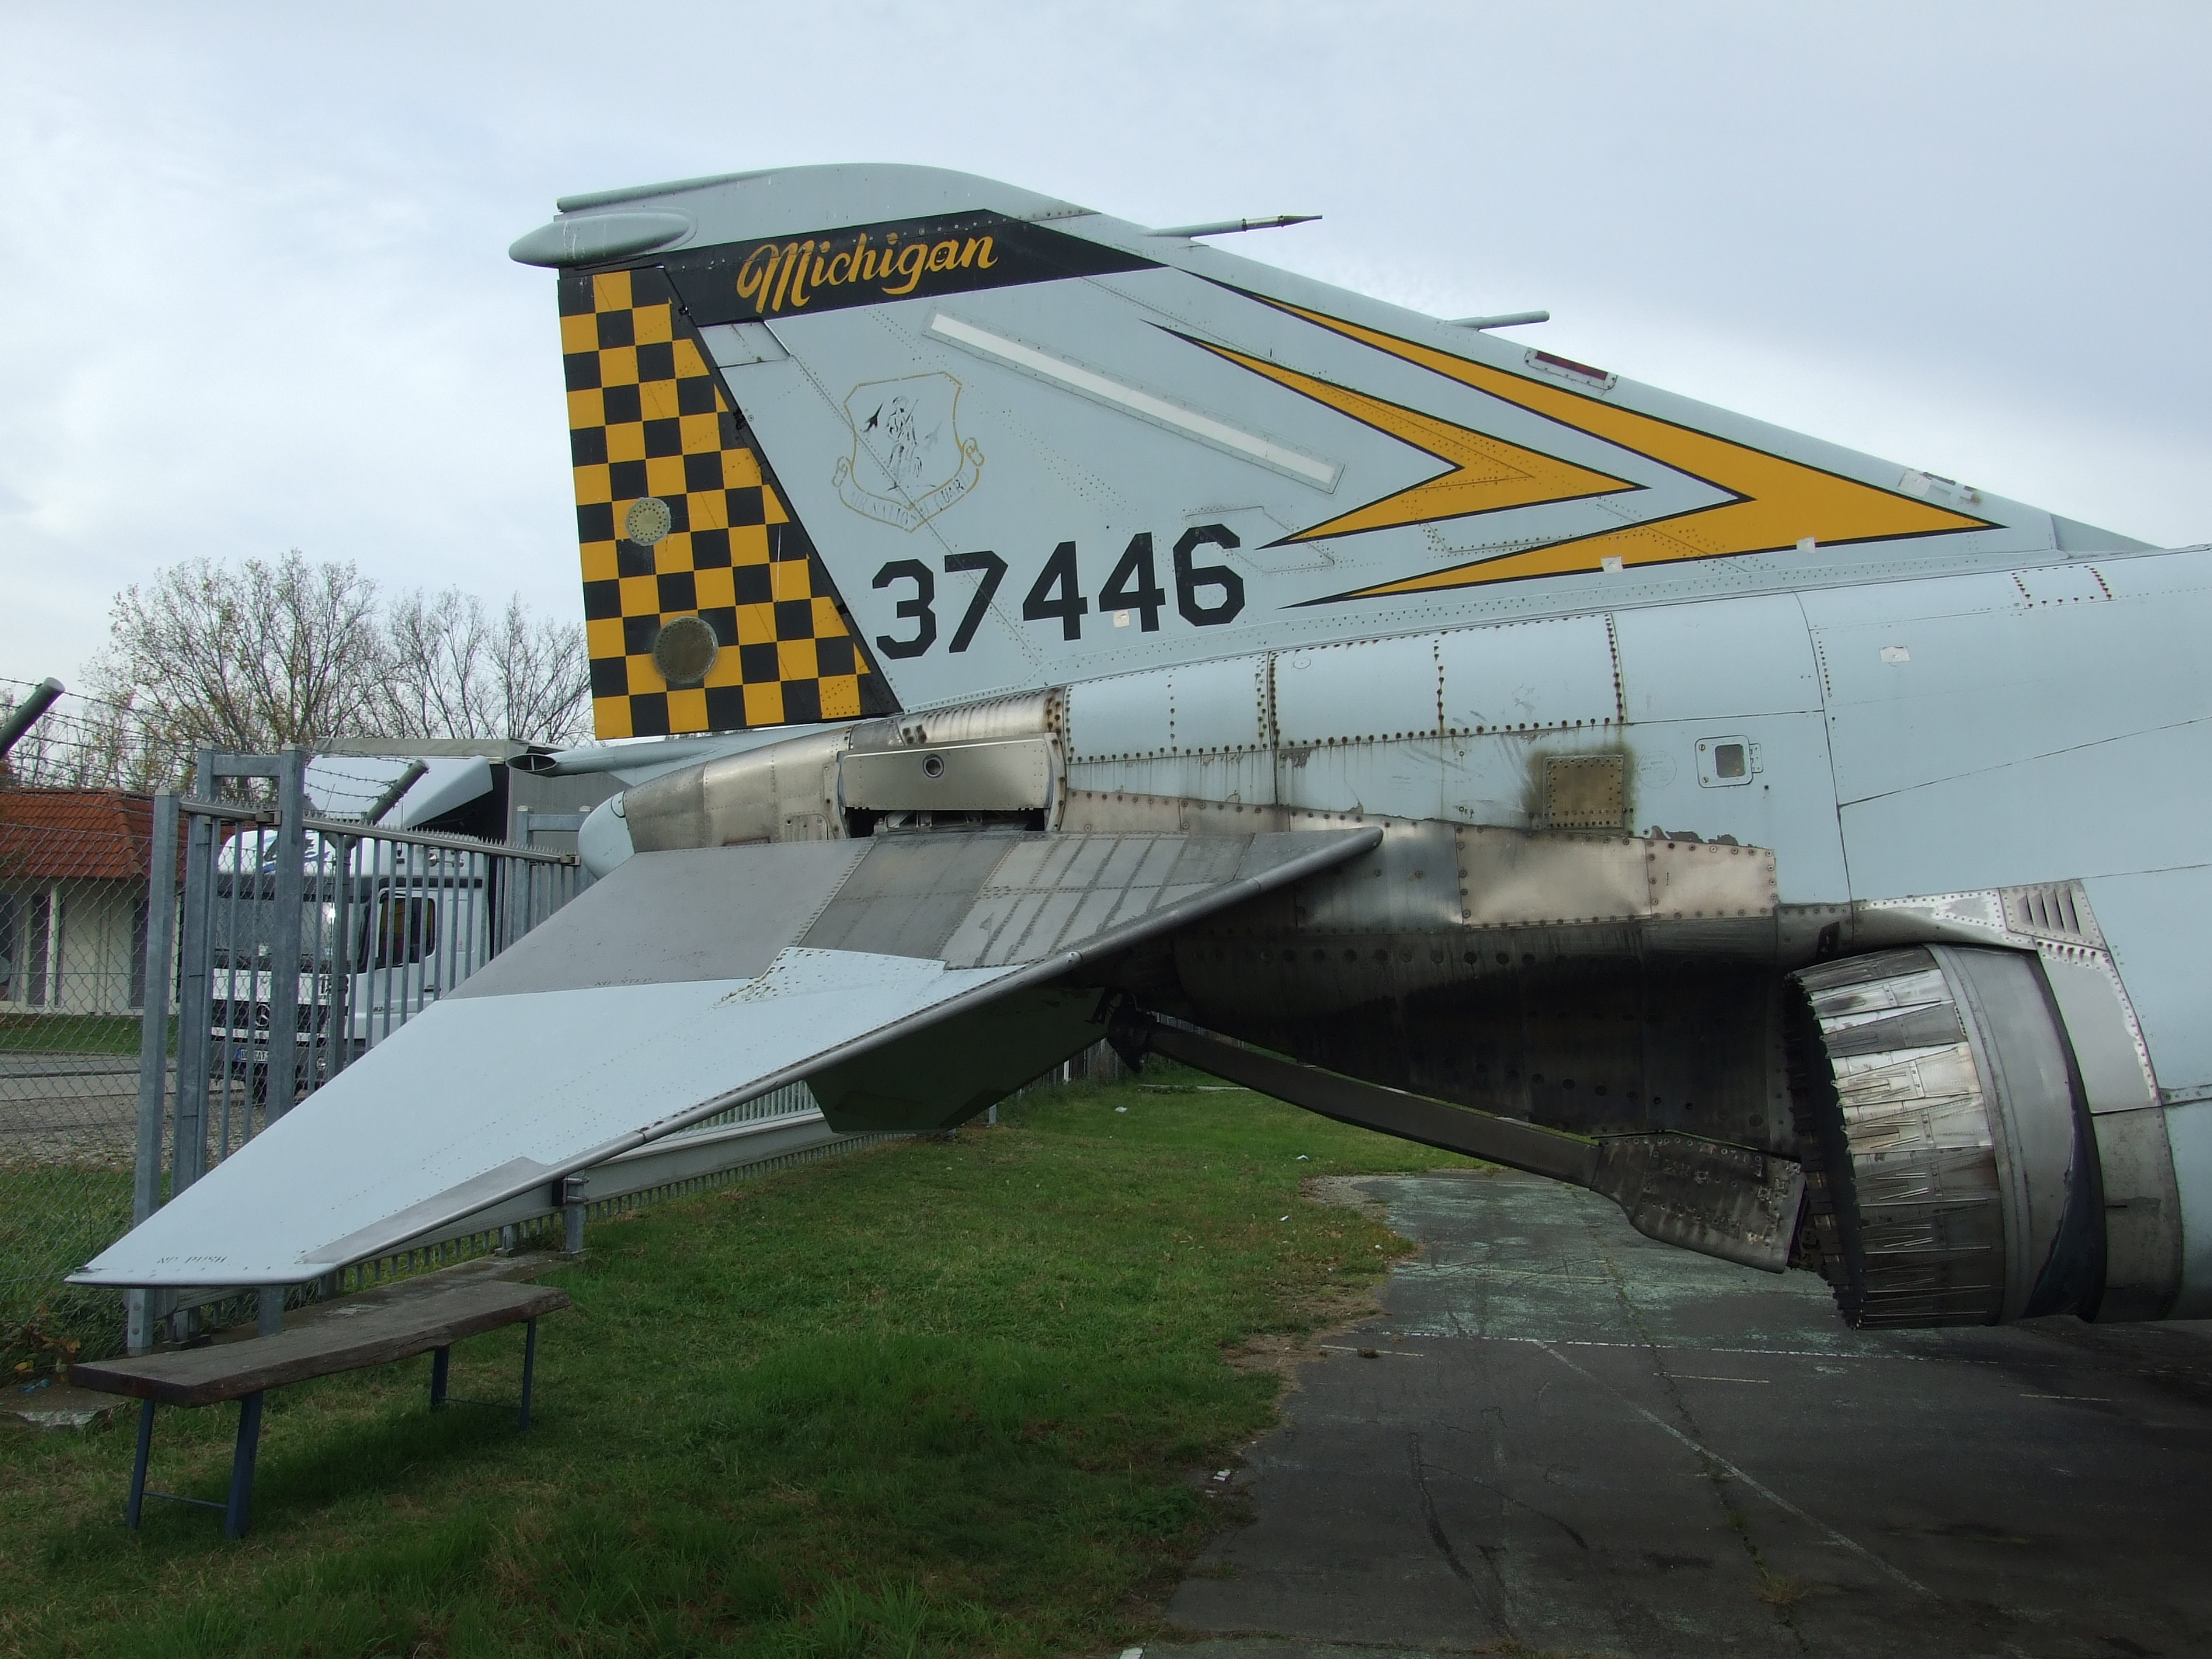 File:F-4 Phantom II 37446 03.JPG - Wikimedia Commons